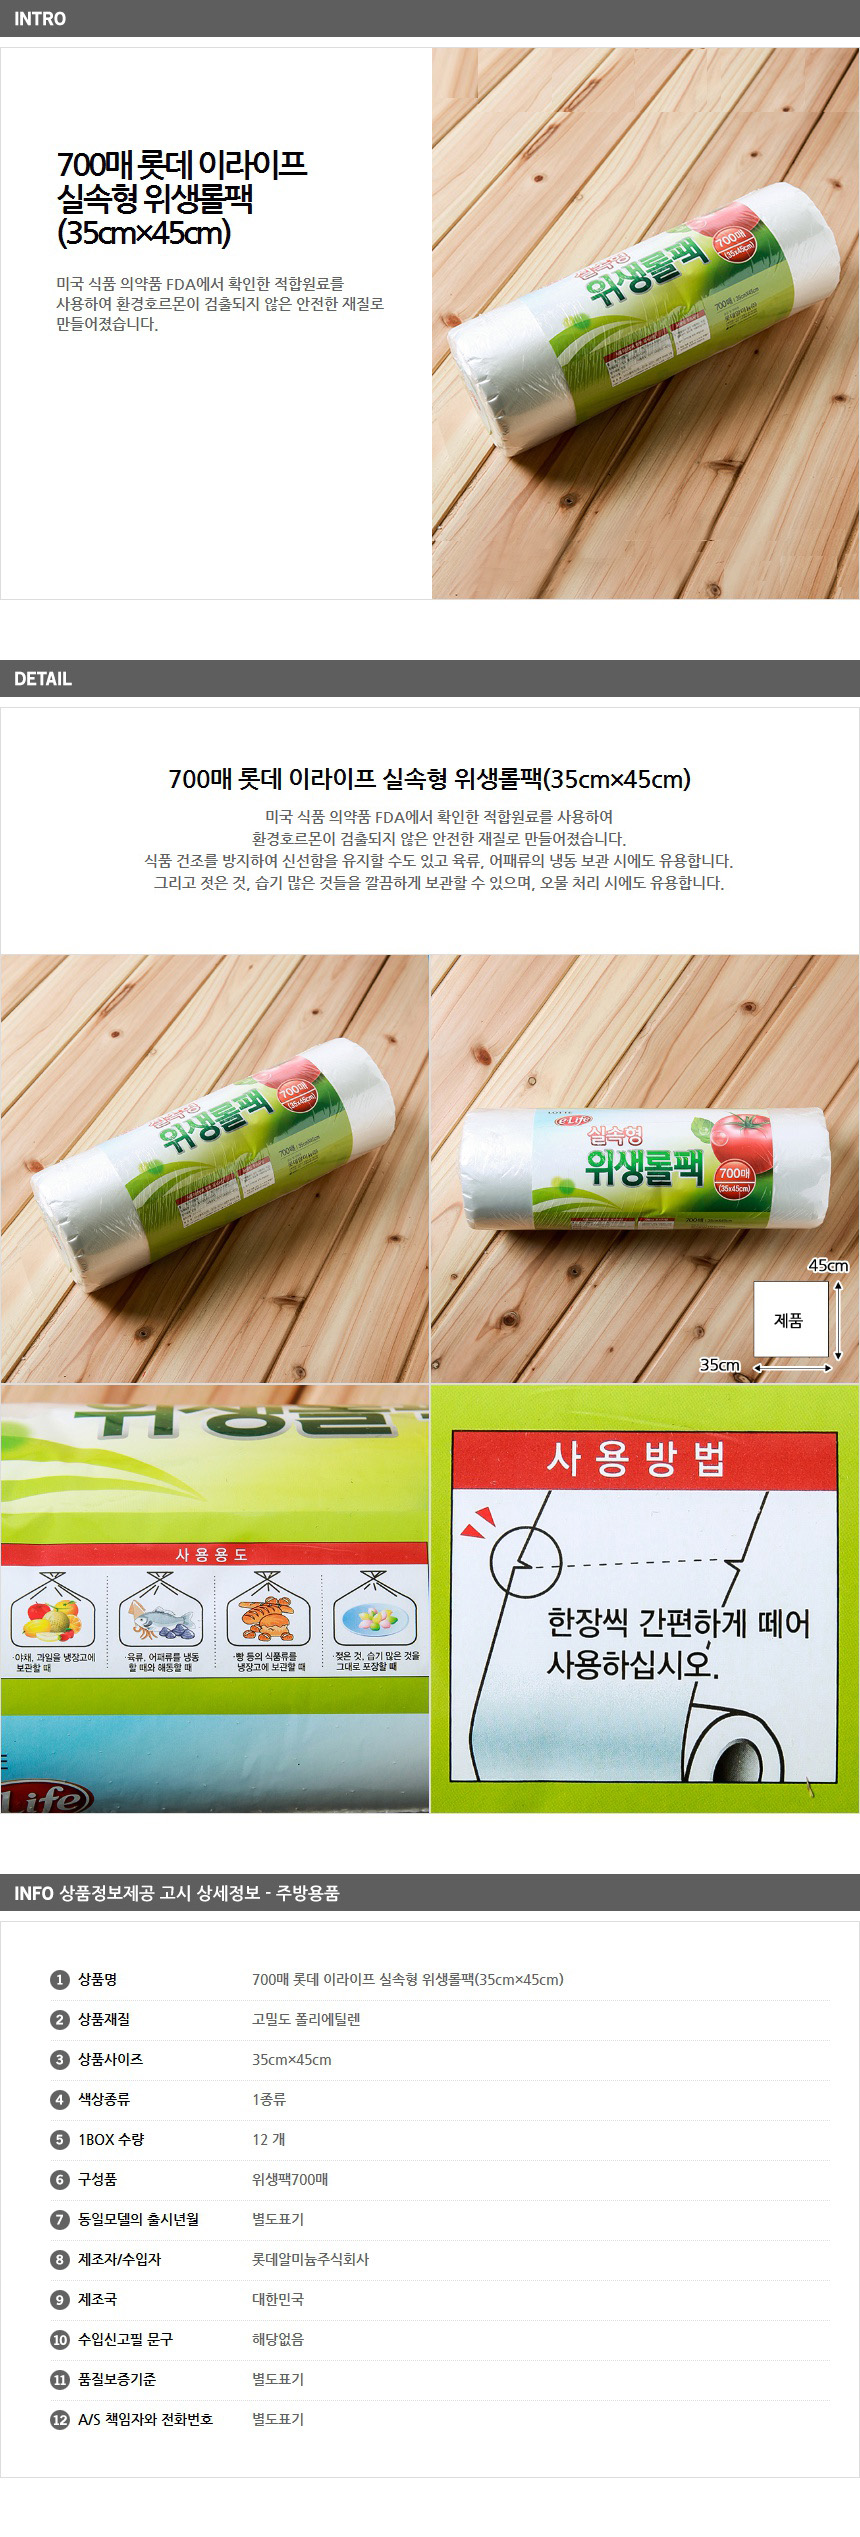 롯데주방용품/700매/위생비닐백/위생팩